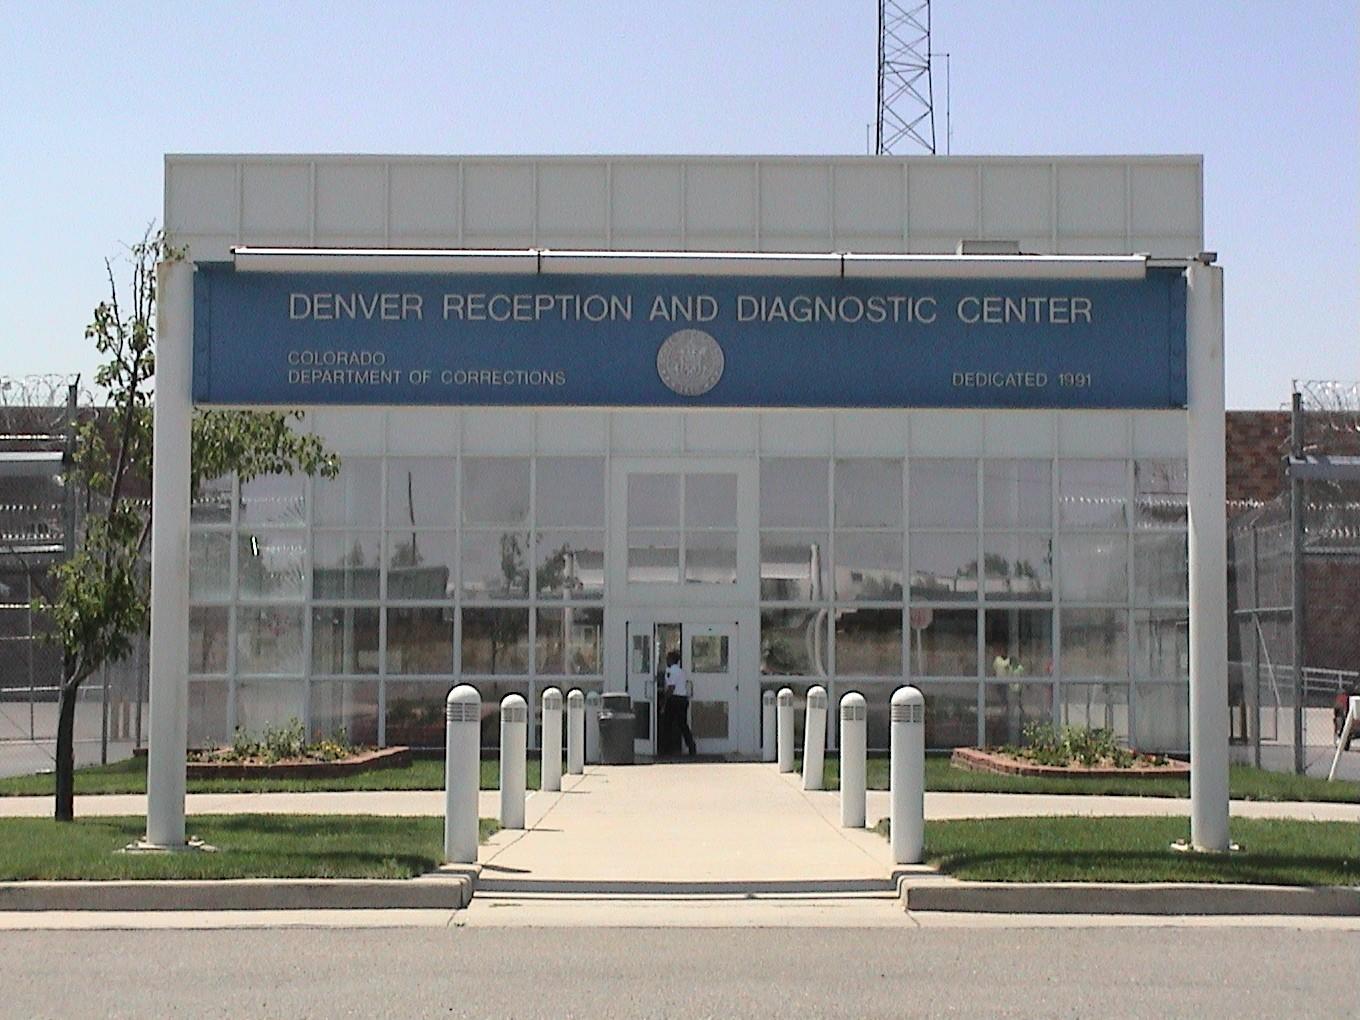 Denver Reception and Diagnostic Center